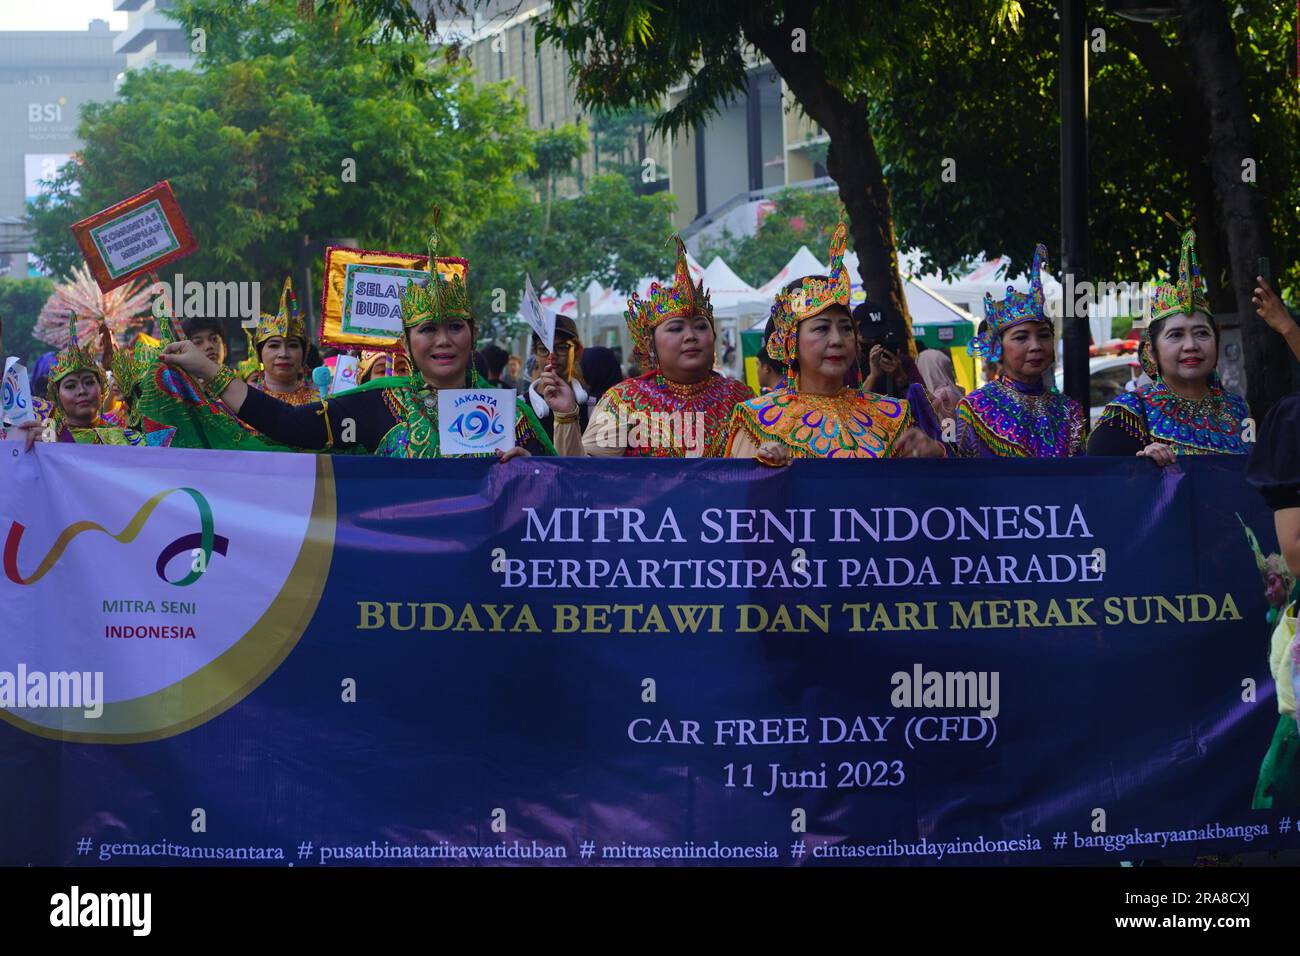 11. Juni 2023 Paprika in traditioneller indonesischer Kleidung auf dem Art Carnival während des autofreien Tages in Jakarta. Straßenfotografie. Stockfoto